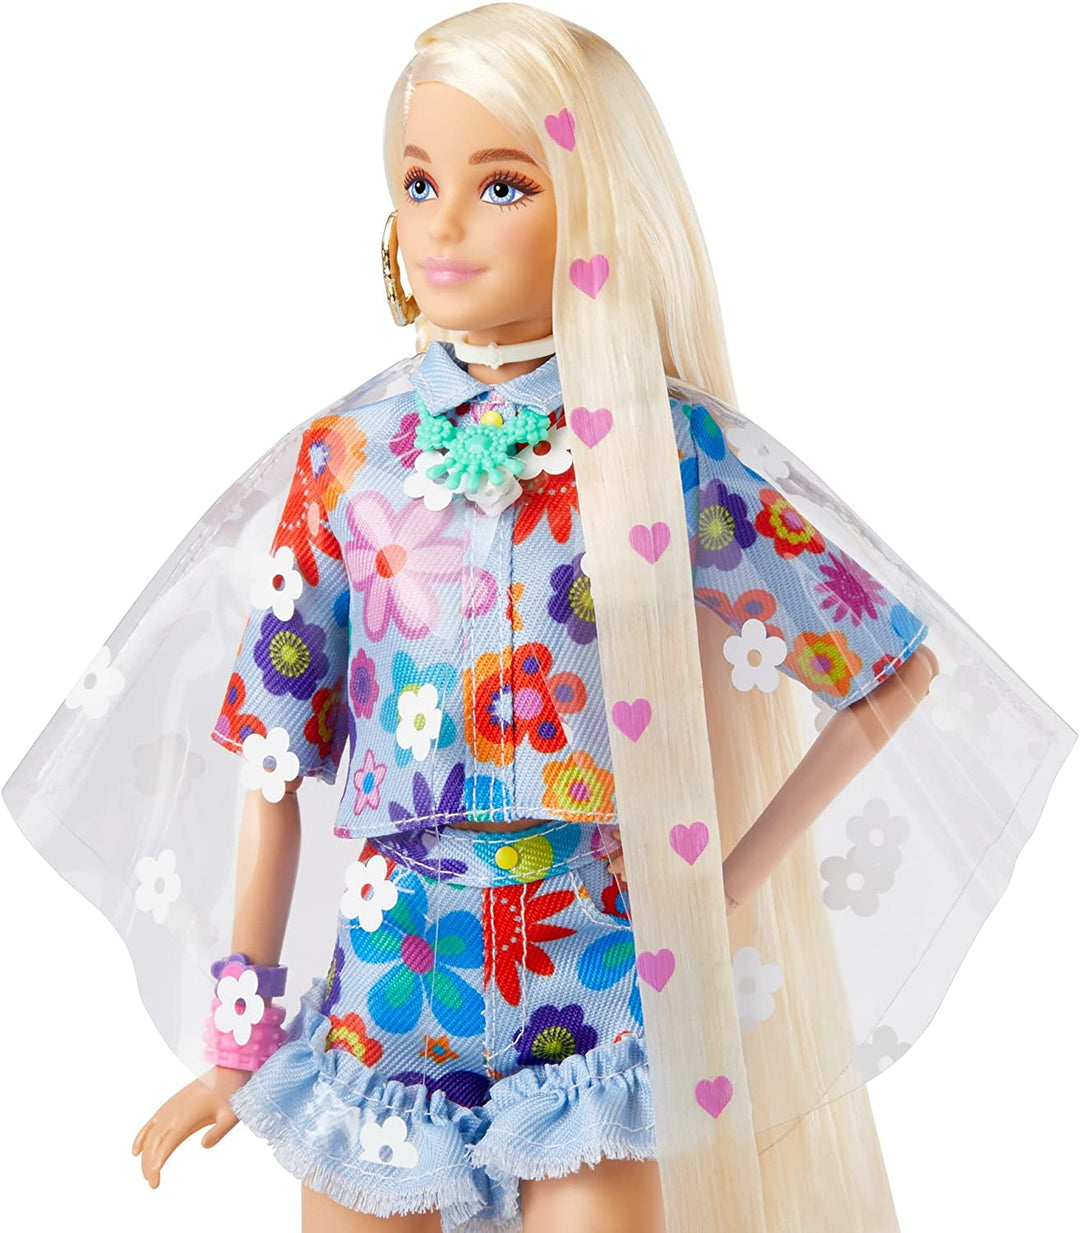 Barbie Extra-Puppe Nr. 12 im zweiteiligen Blumen-Outfit mit Haustierhase, für 3-Jährige und